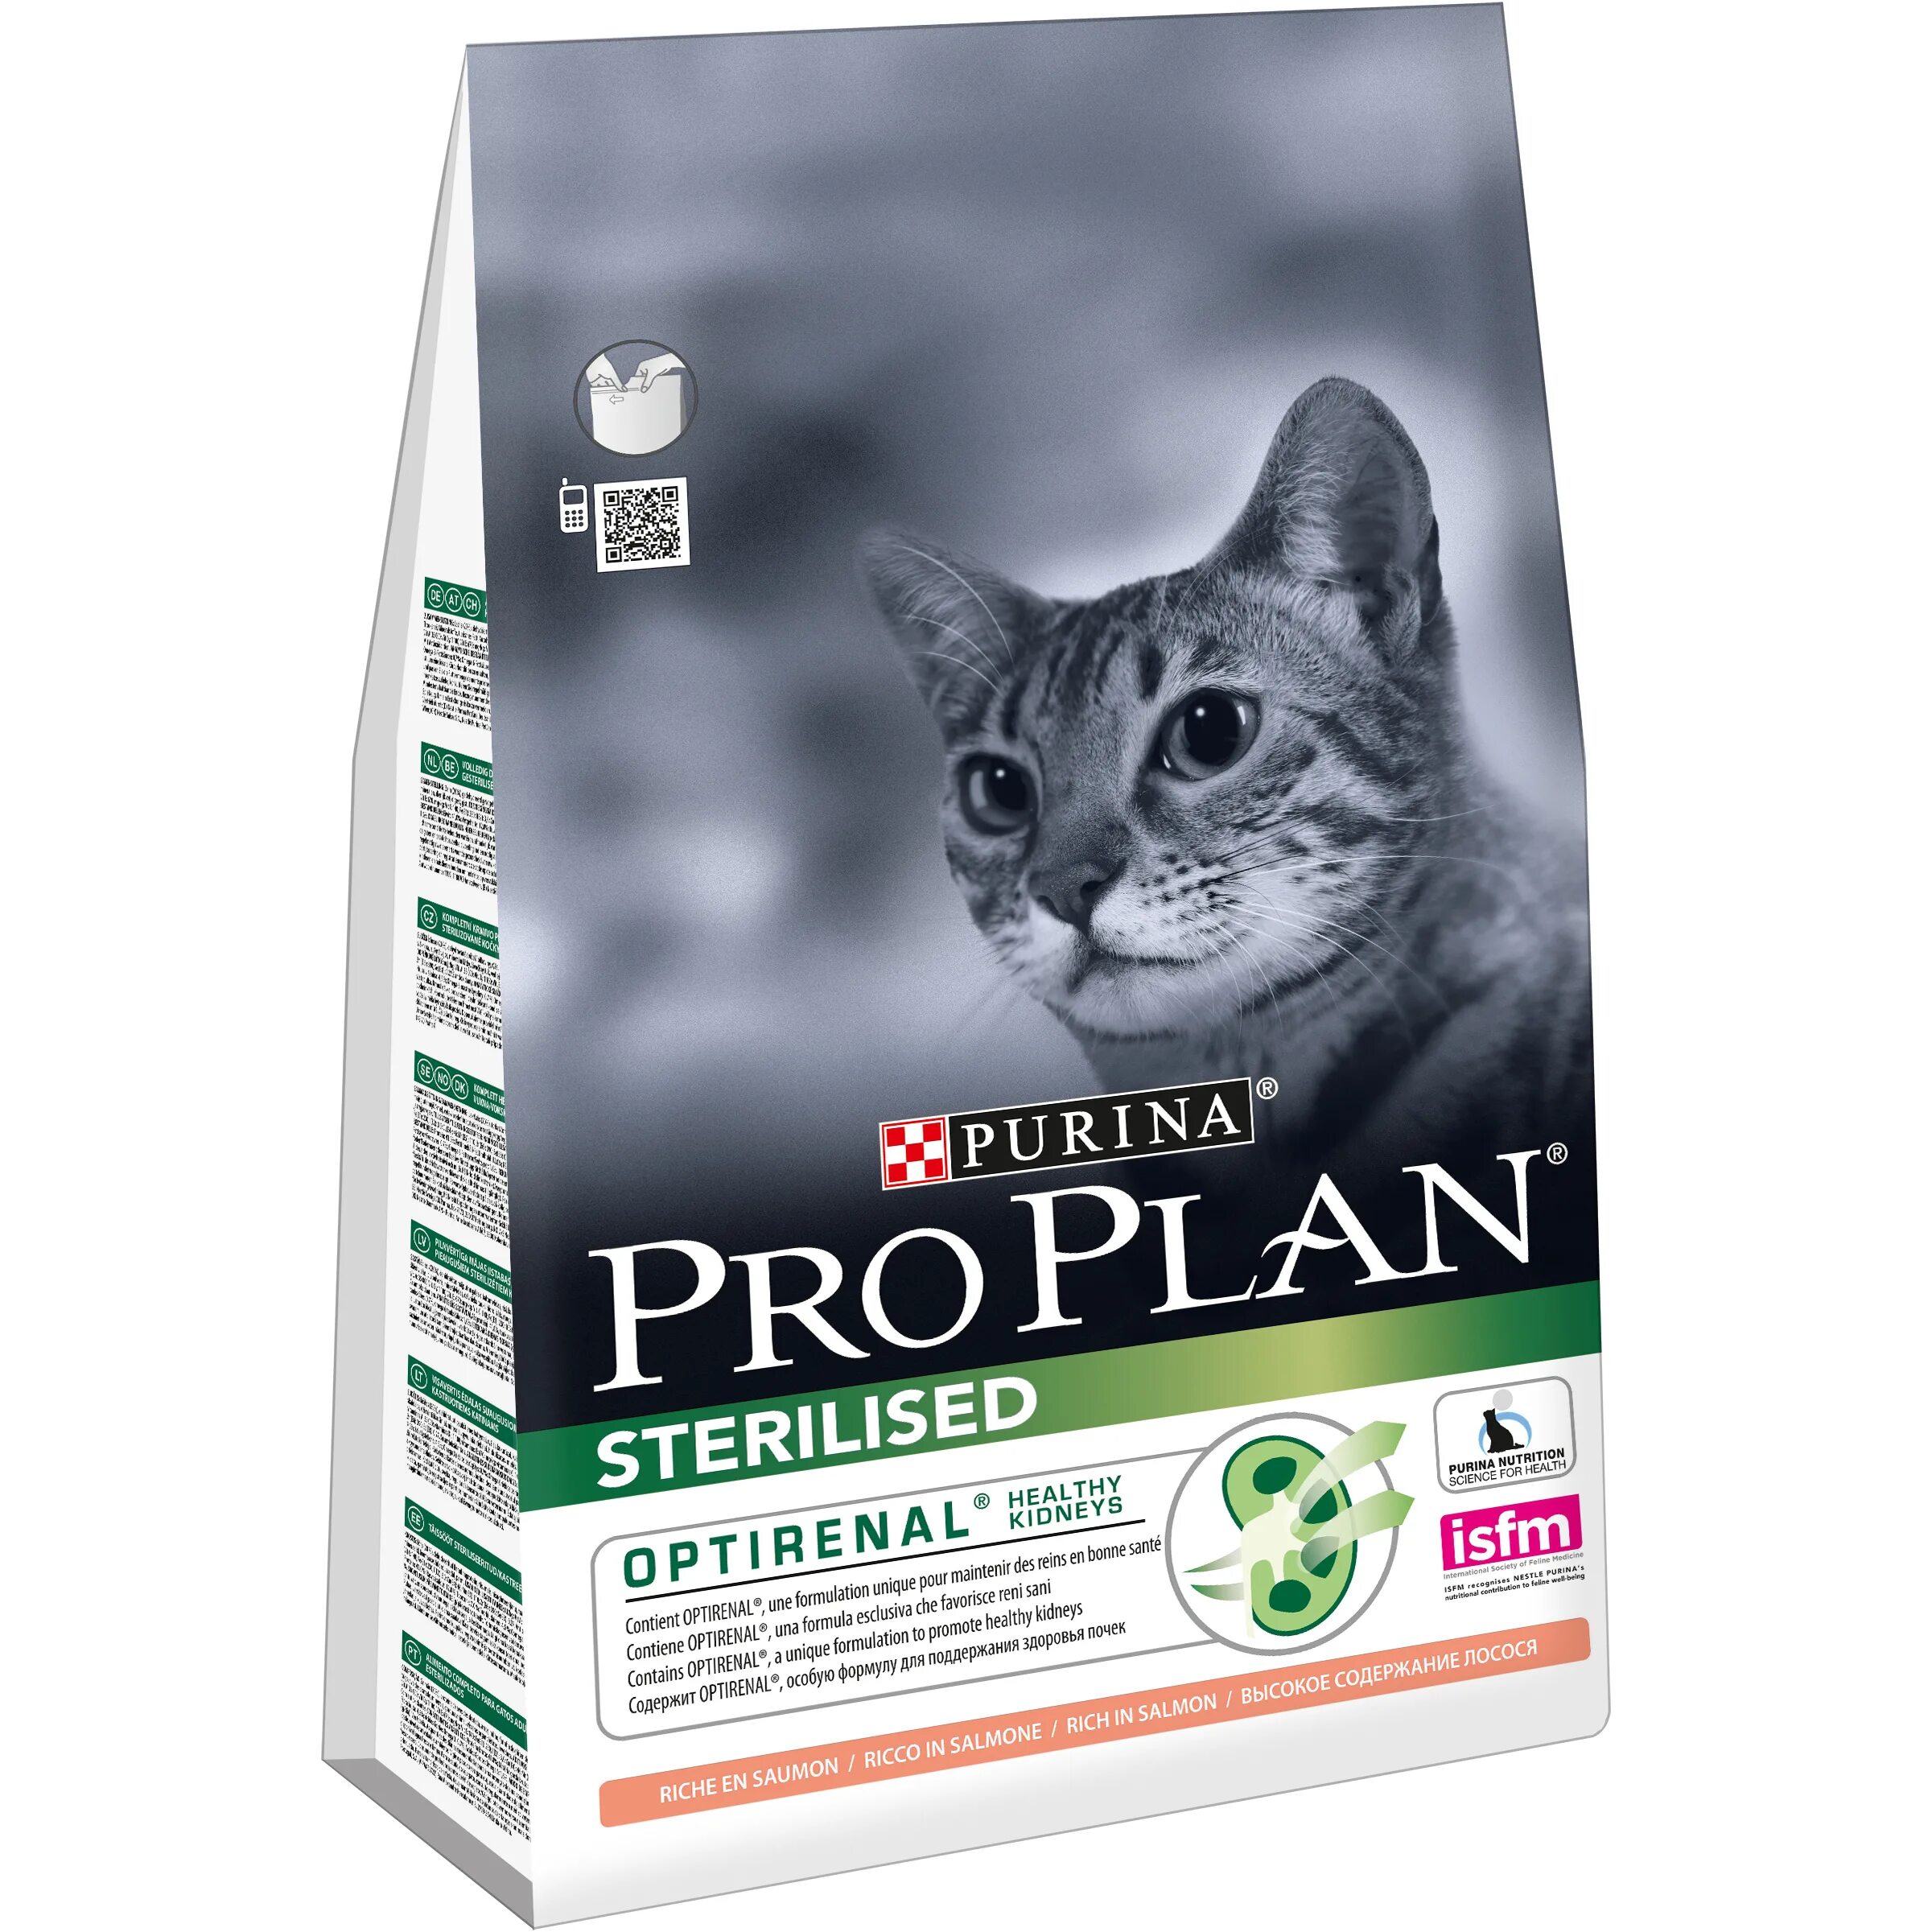 Purina Pro Plan delicate для кошек. Purina Pro Plan Sterilised 7+. Pro Plan Sterilised для кошек. Пурина Проплан для стерилизованных кошек сухой. Pro plan для стерилизованных котов